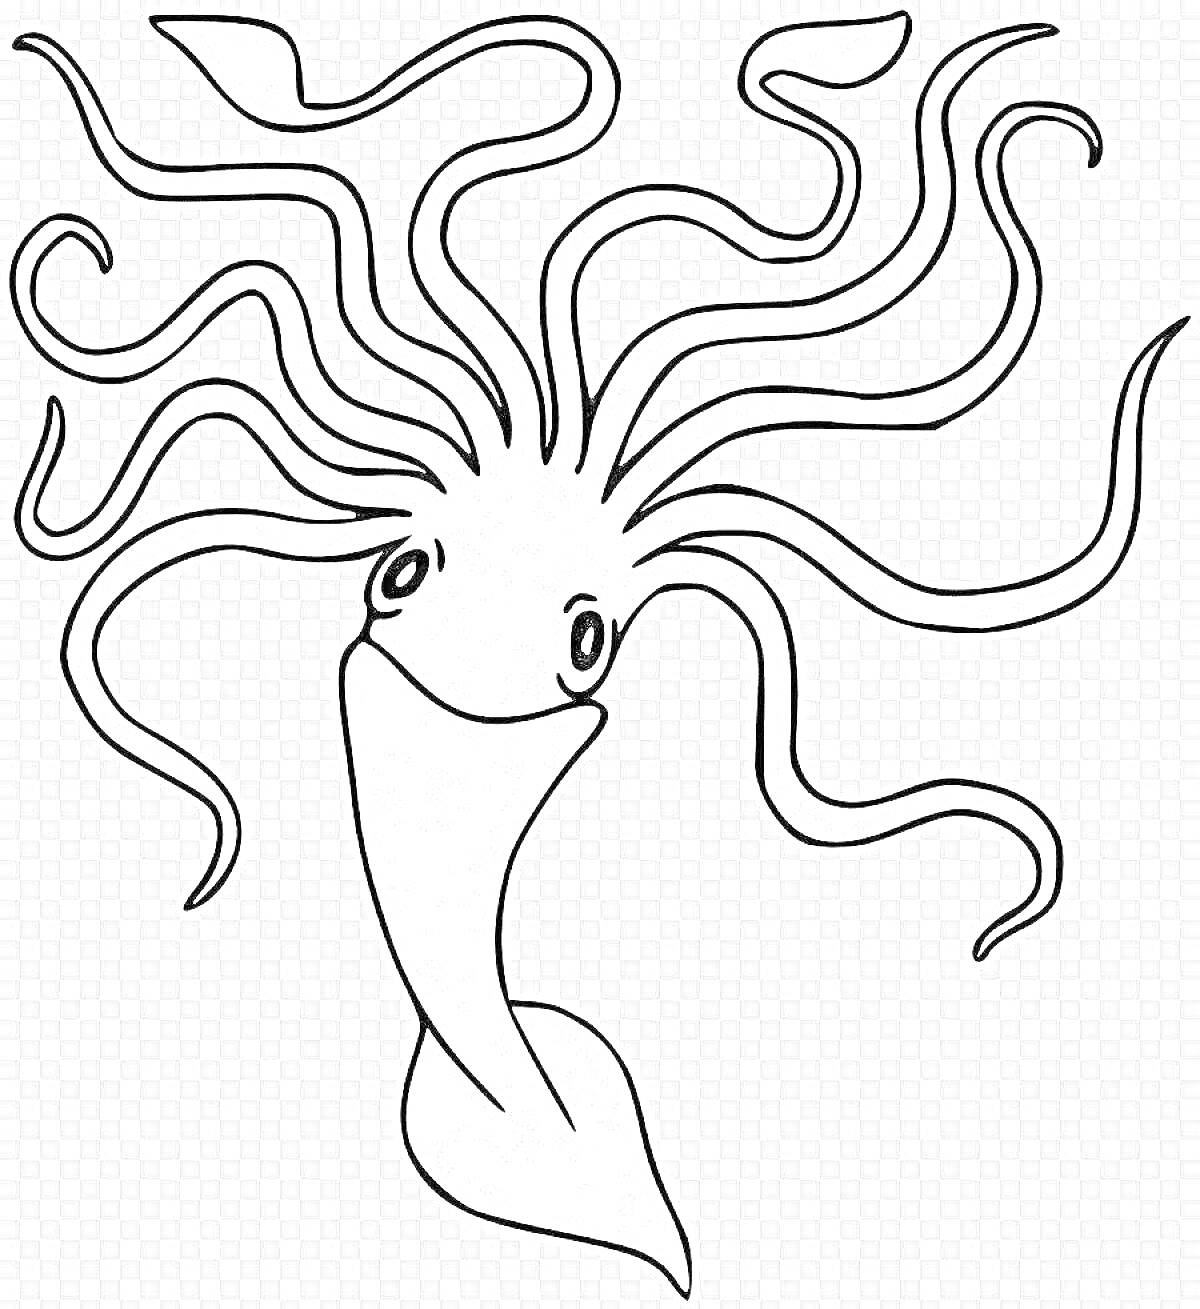 Раскраска Улыбающийся кальмар с длинными щупальцами